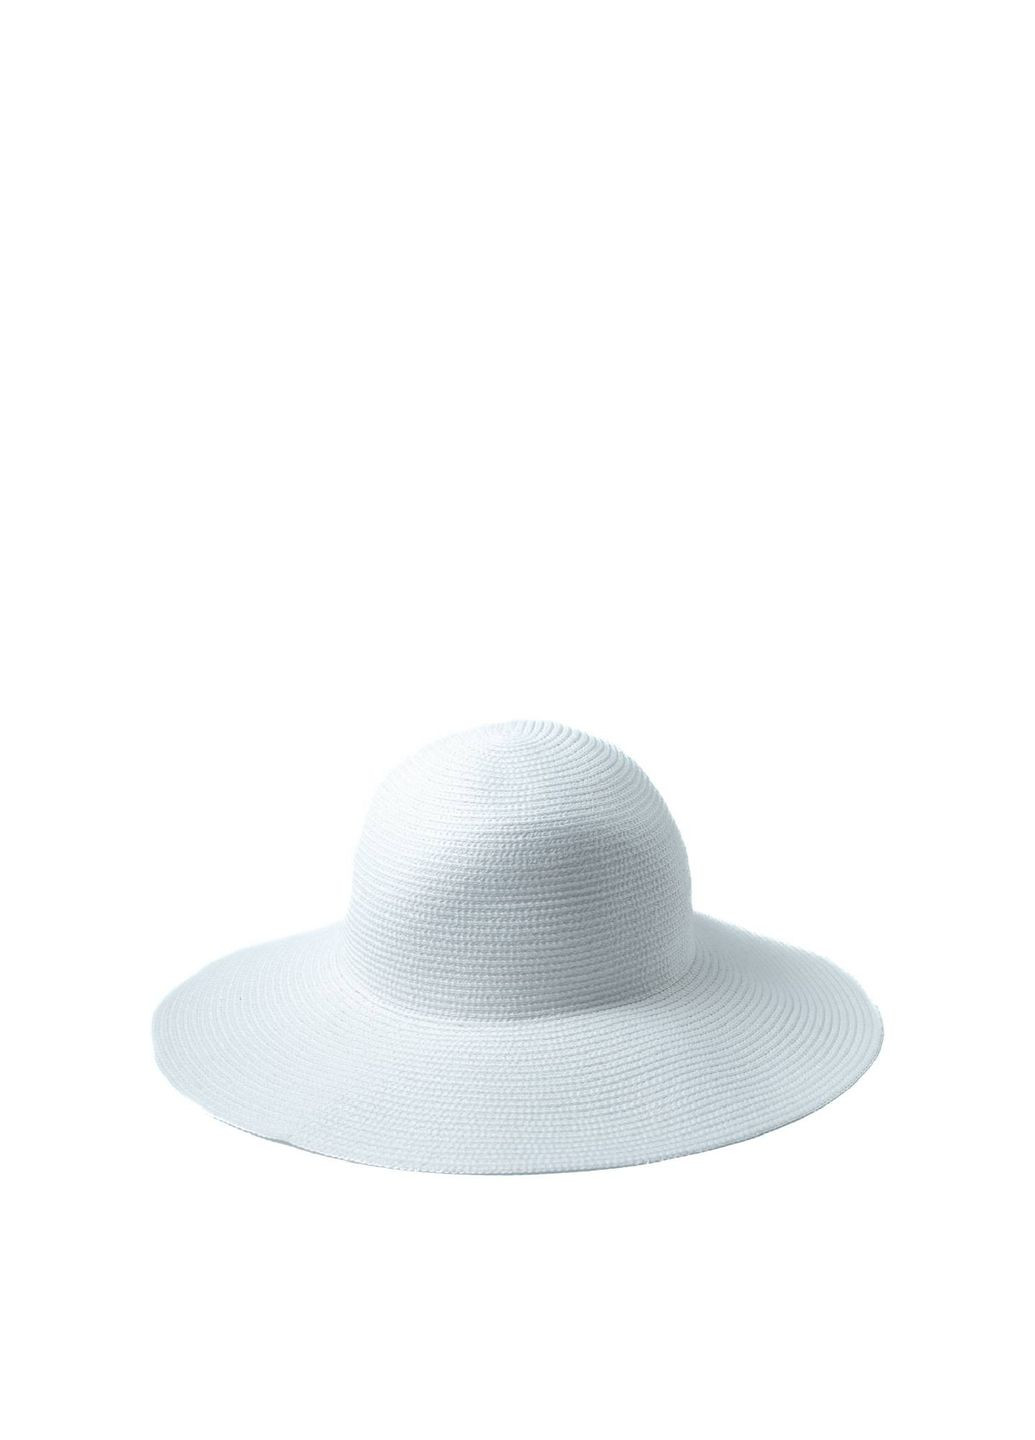 Шляпа слауч женская белая САНДИ LuckyLOOK 060-655 (292668885)